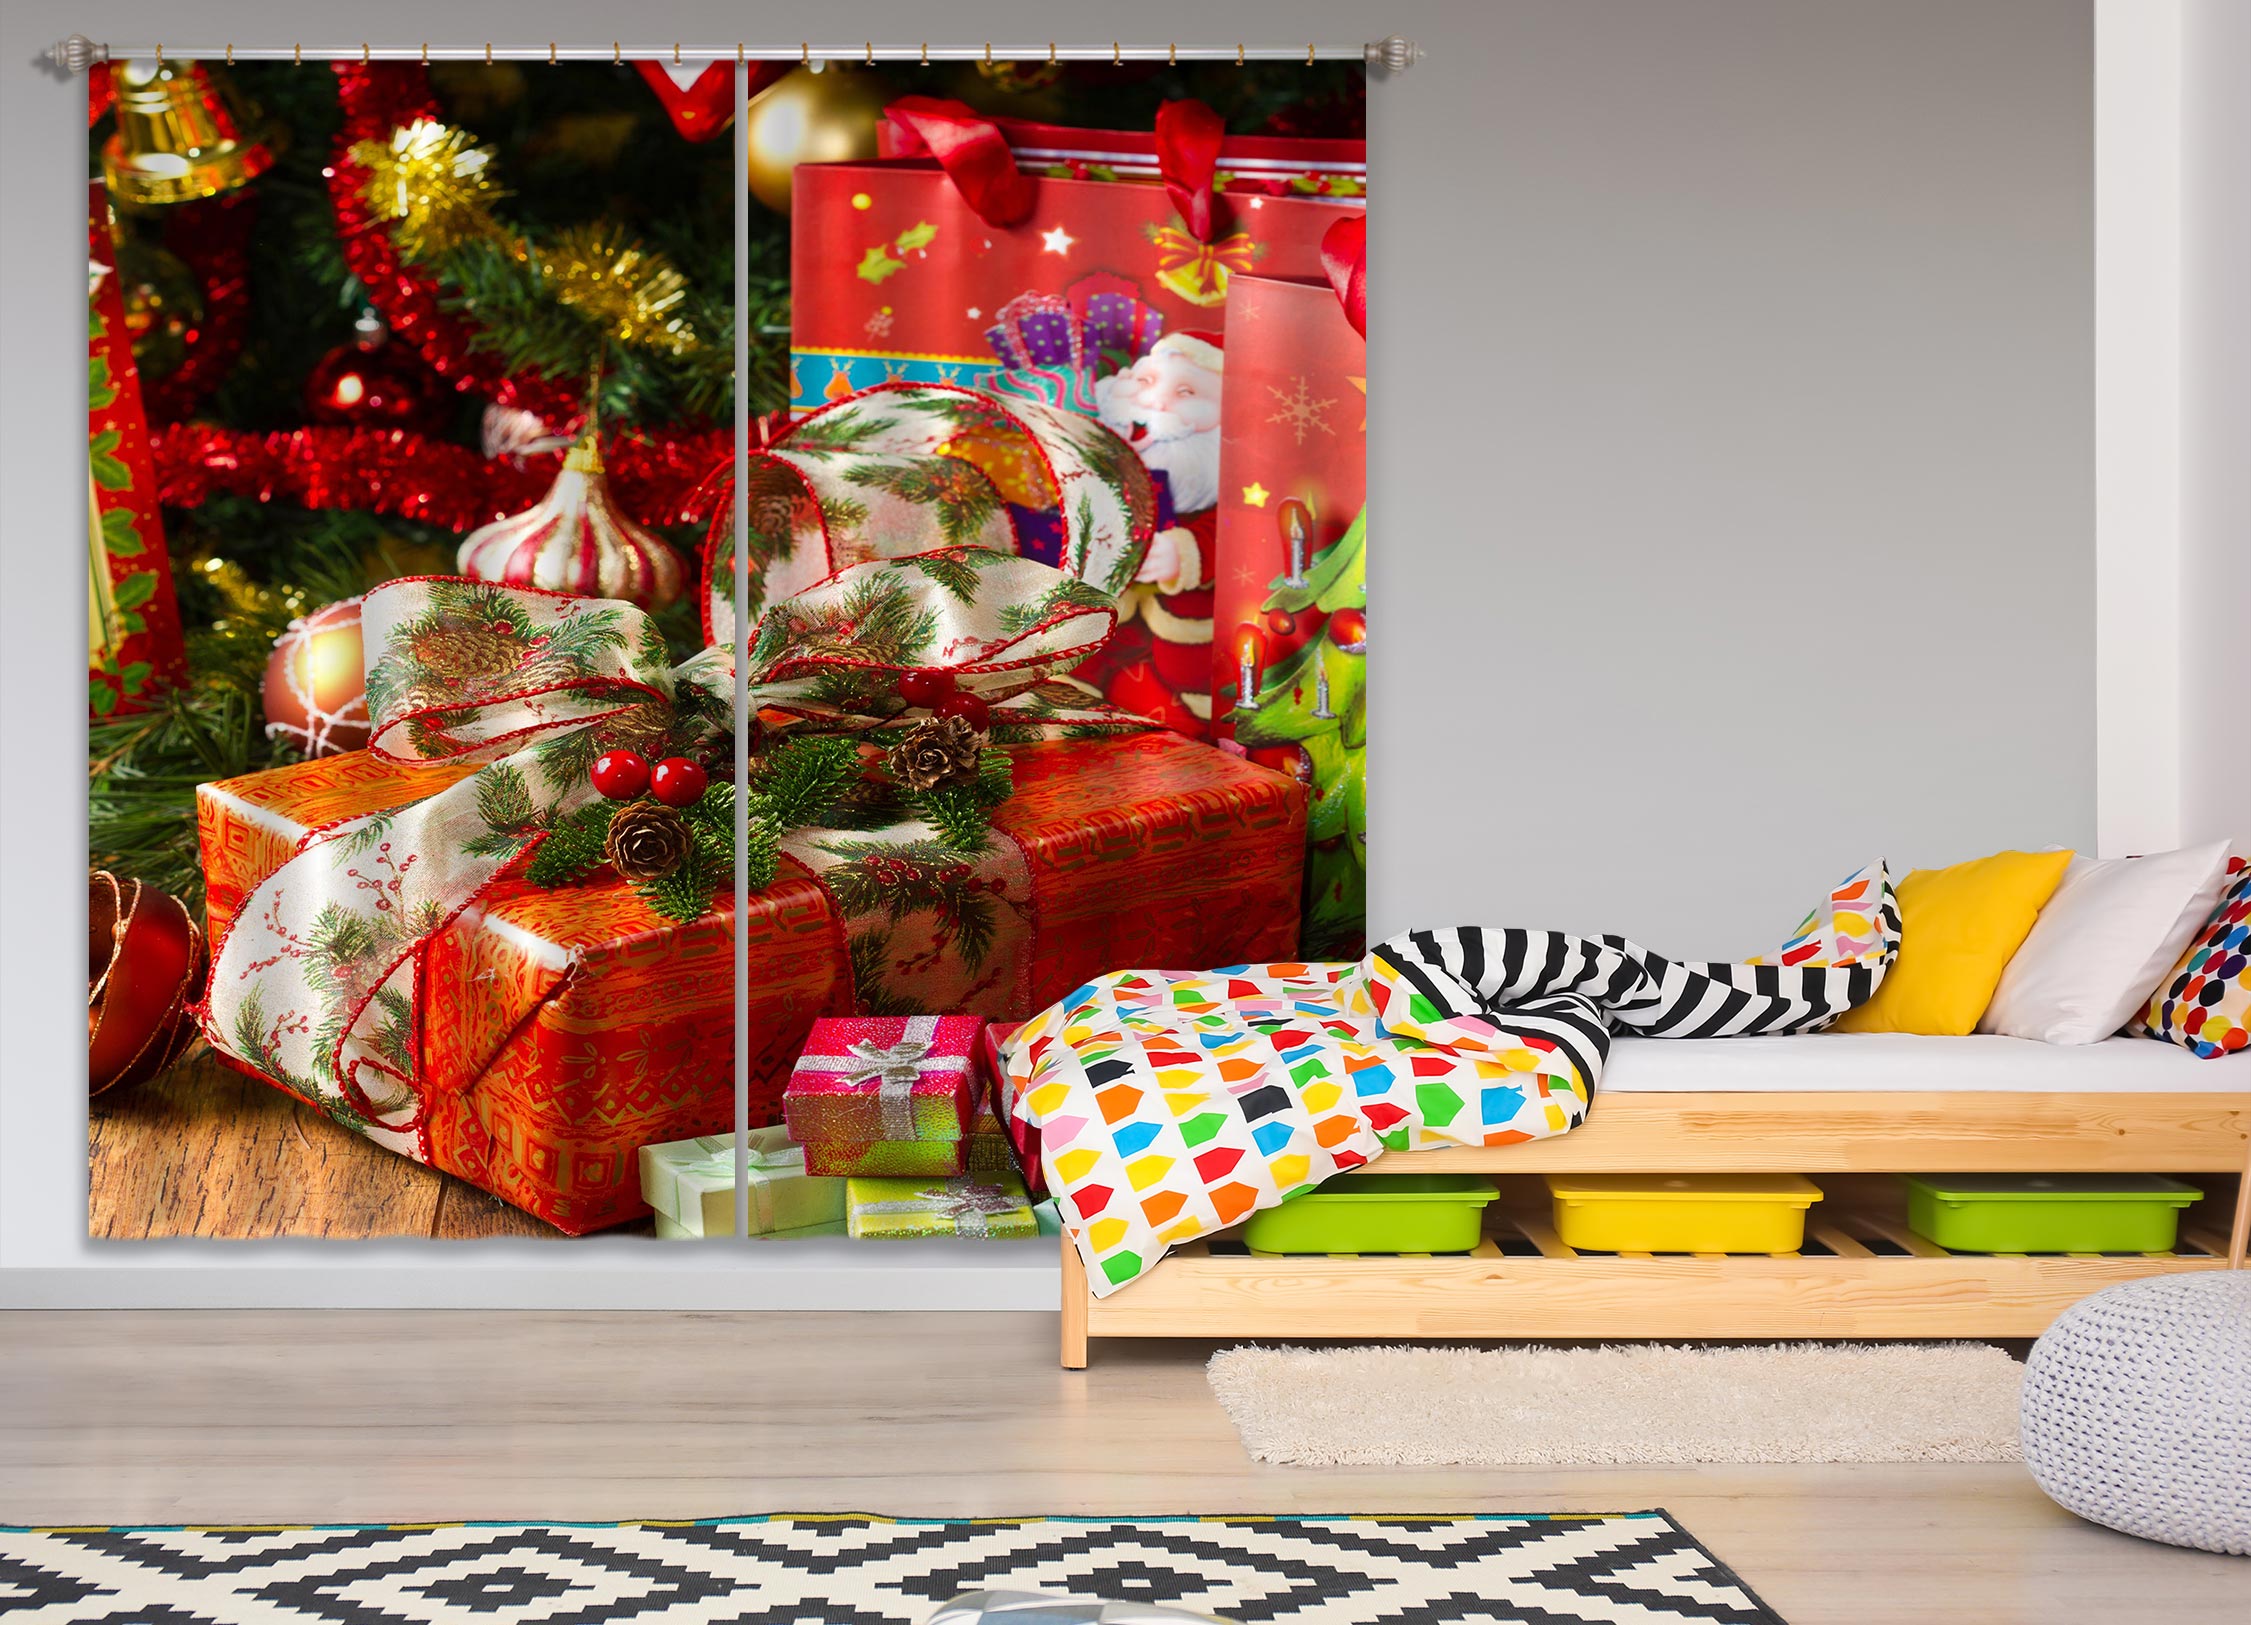 3D Gift Box 52010 Christmas Curtains Drapes Xmas